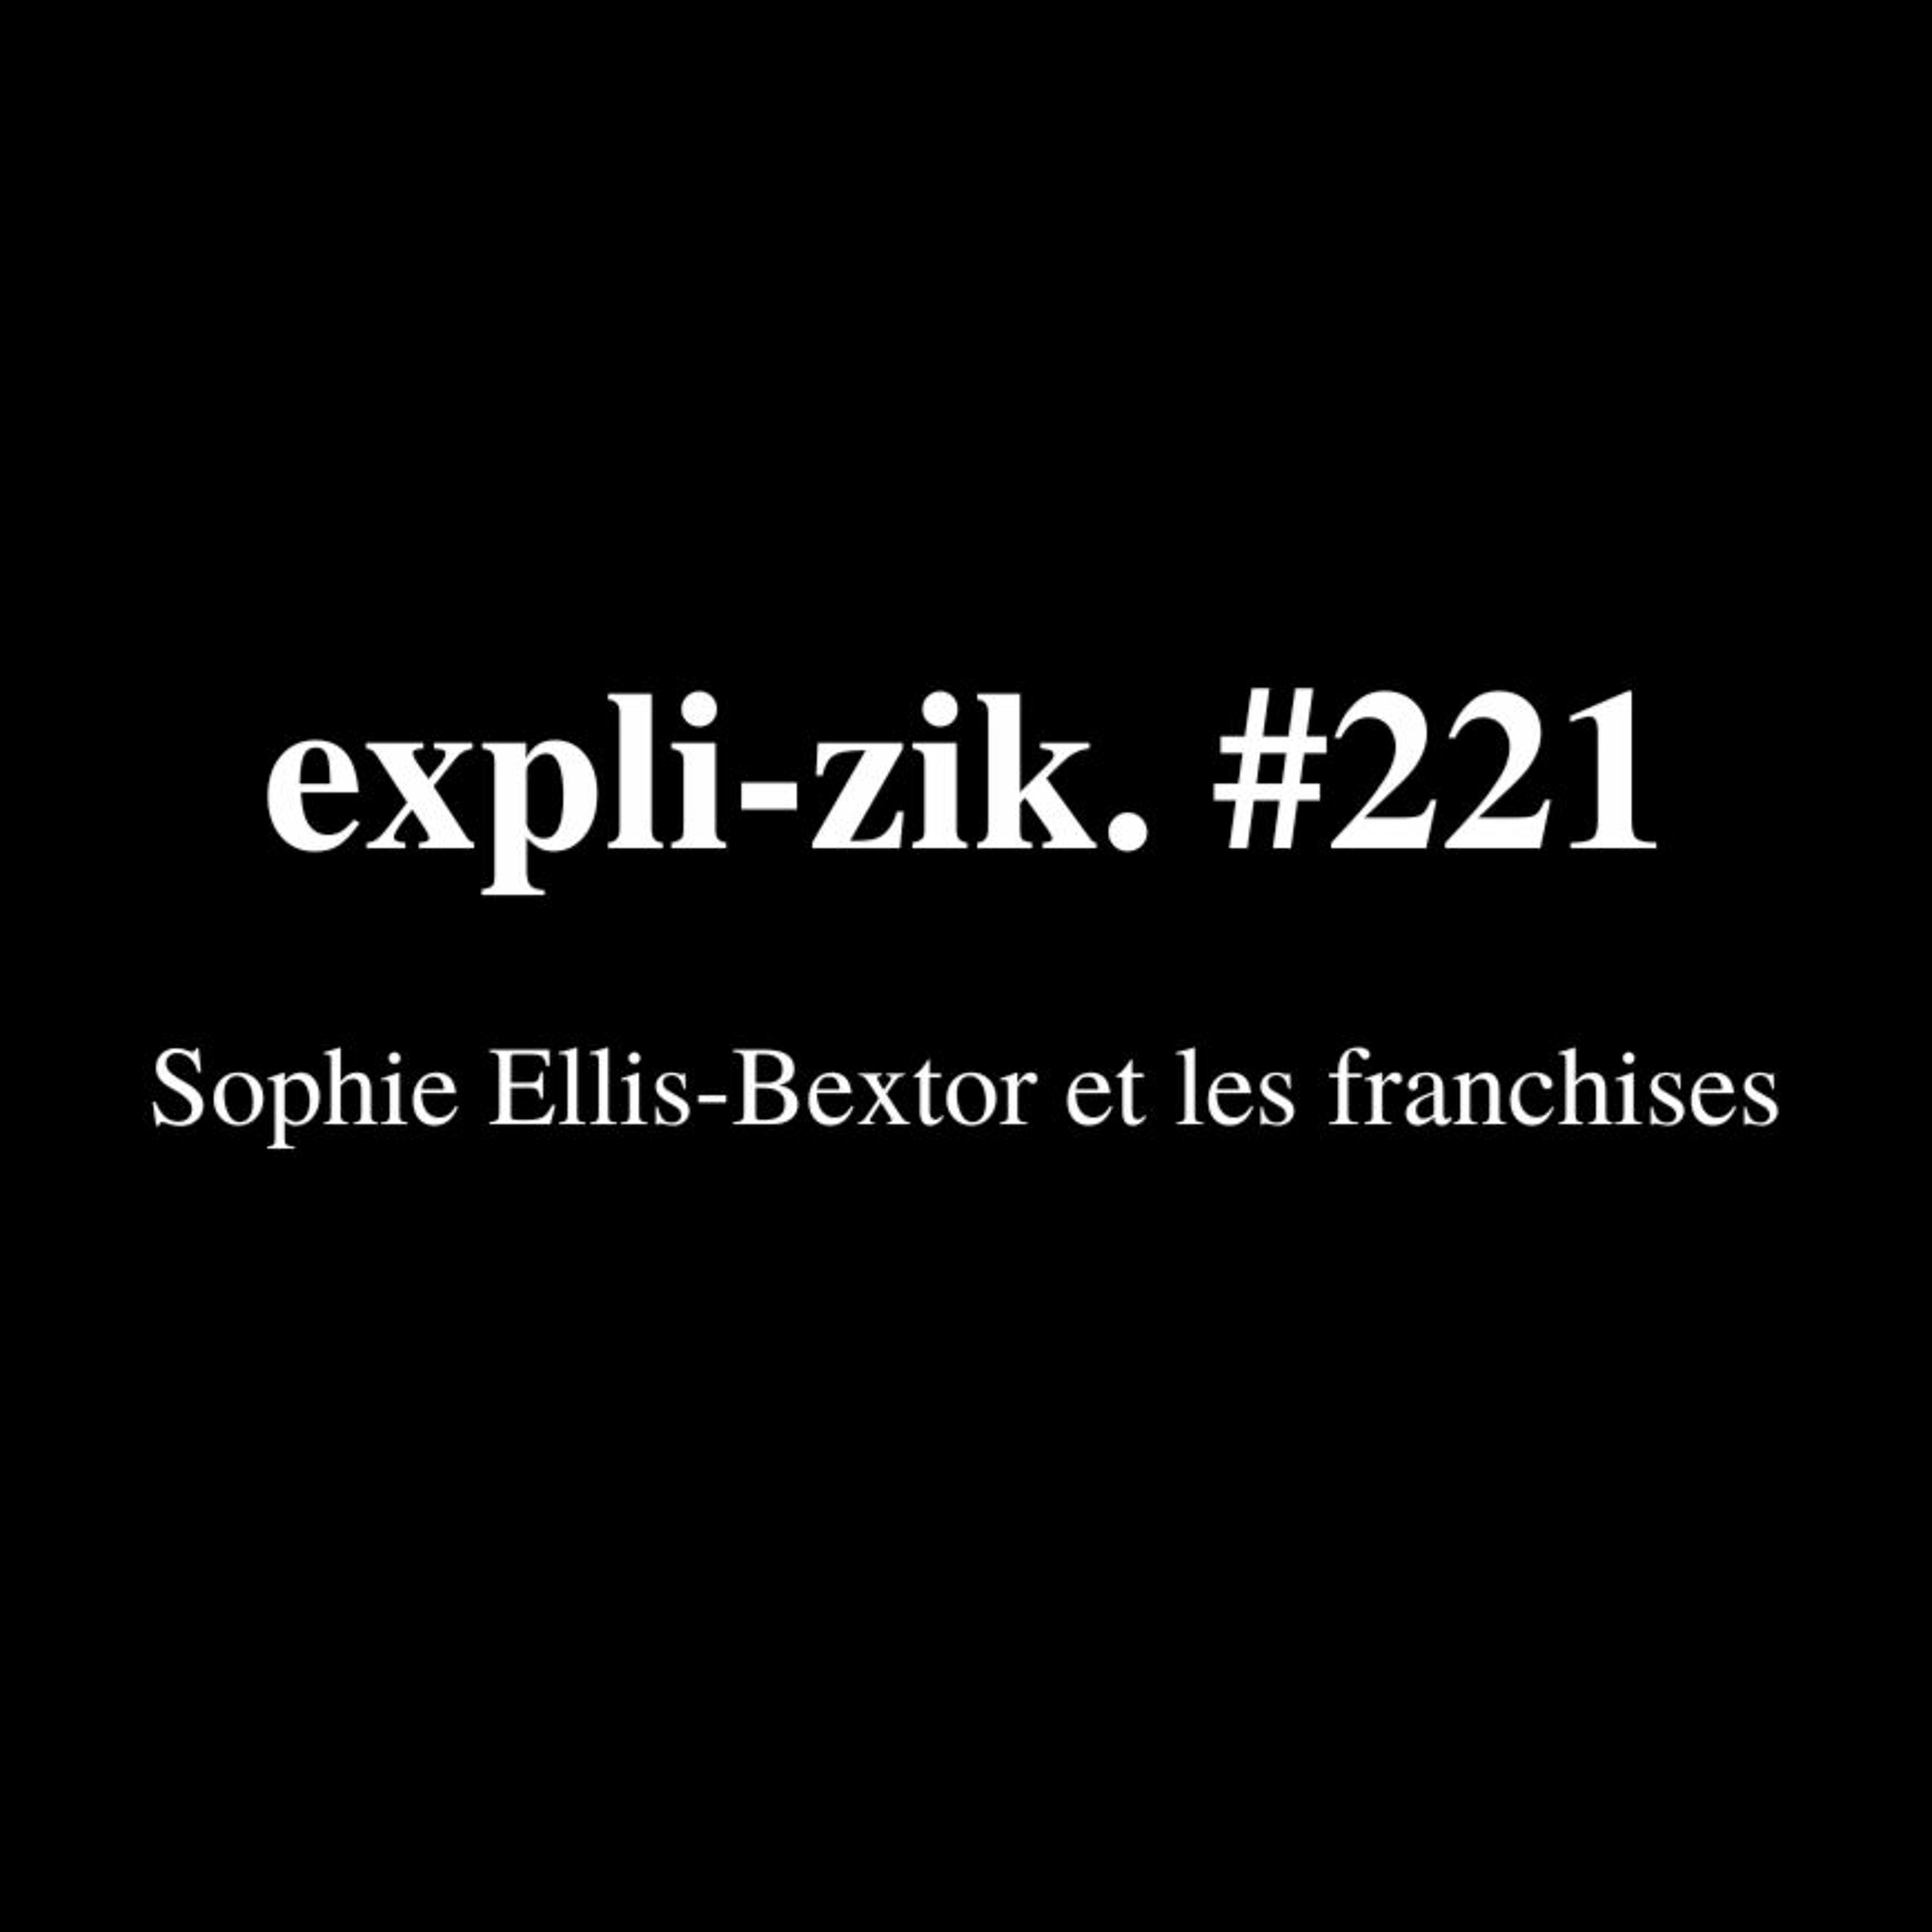 Sophie Ellis-Bextor et les franchises